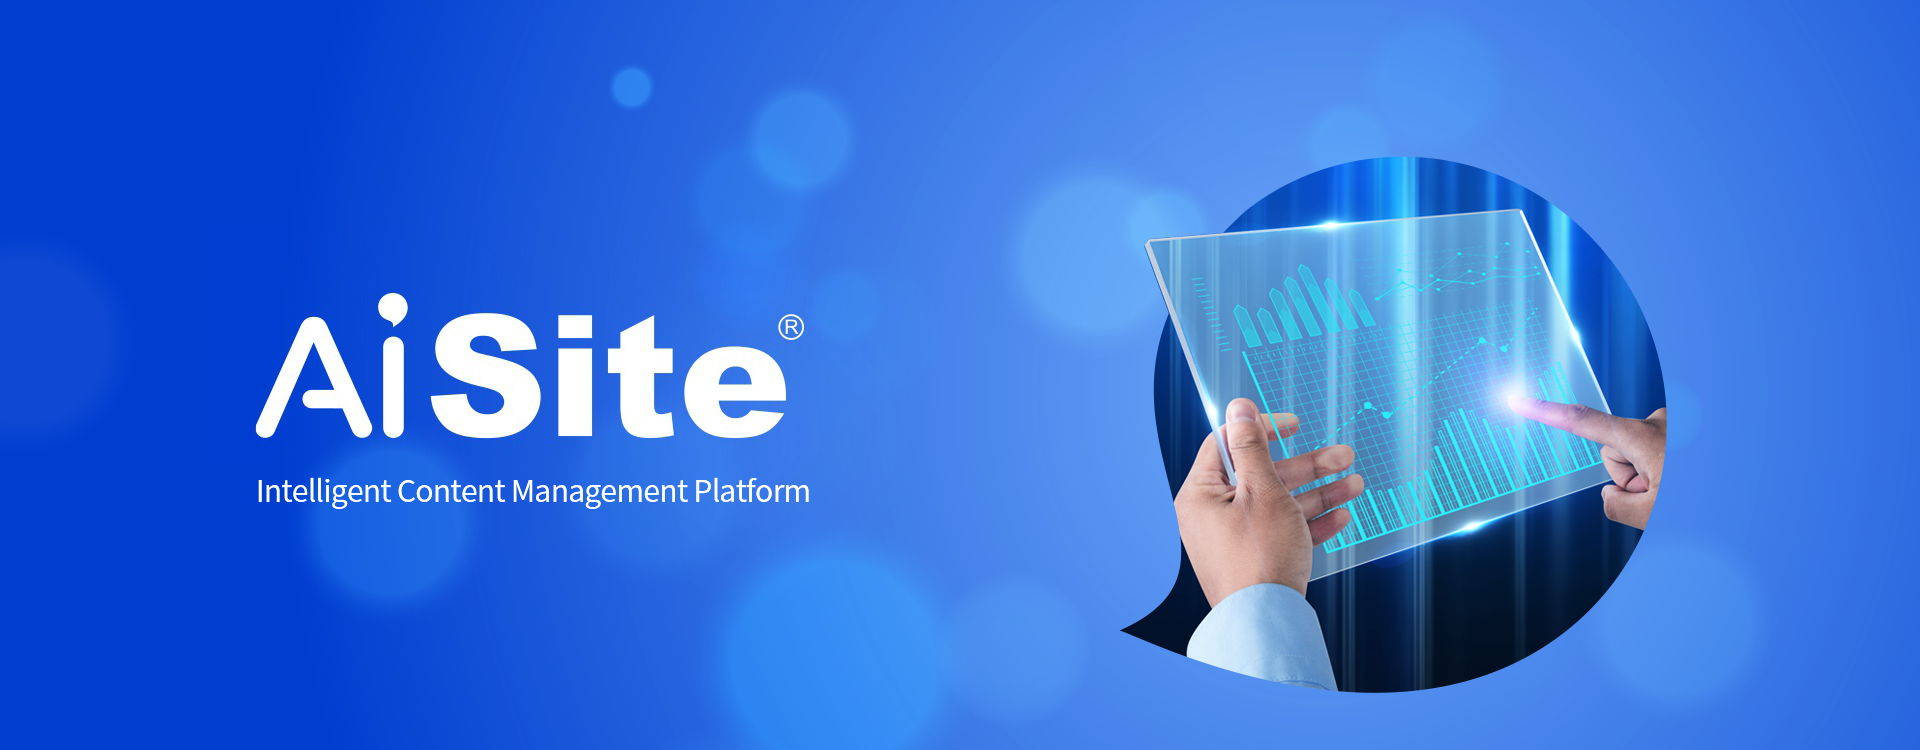 AiSite Intelligent Content Management Platform